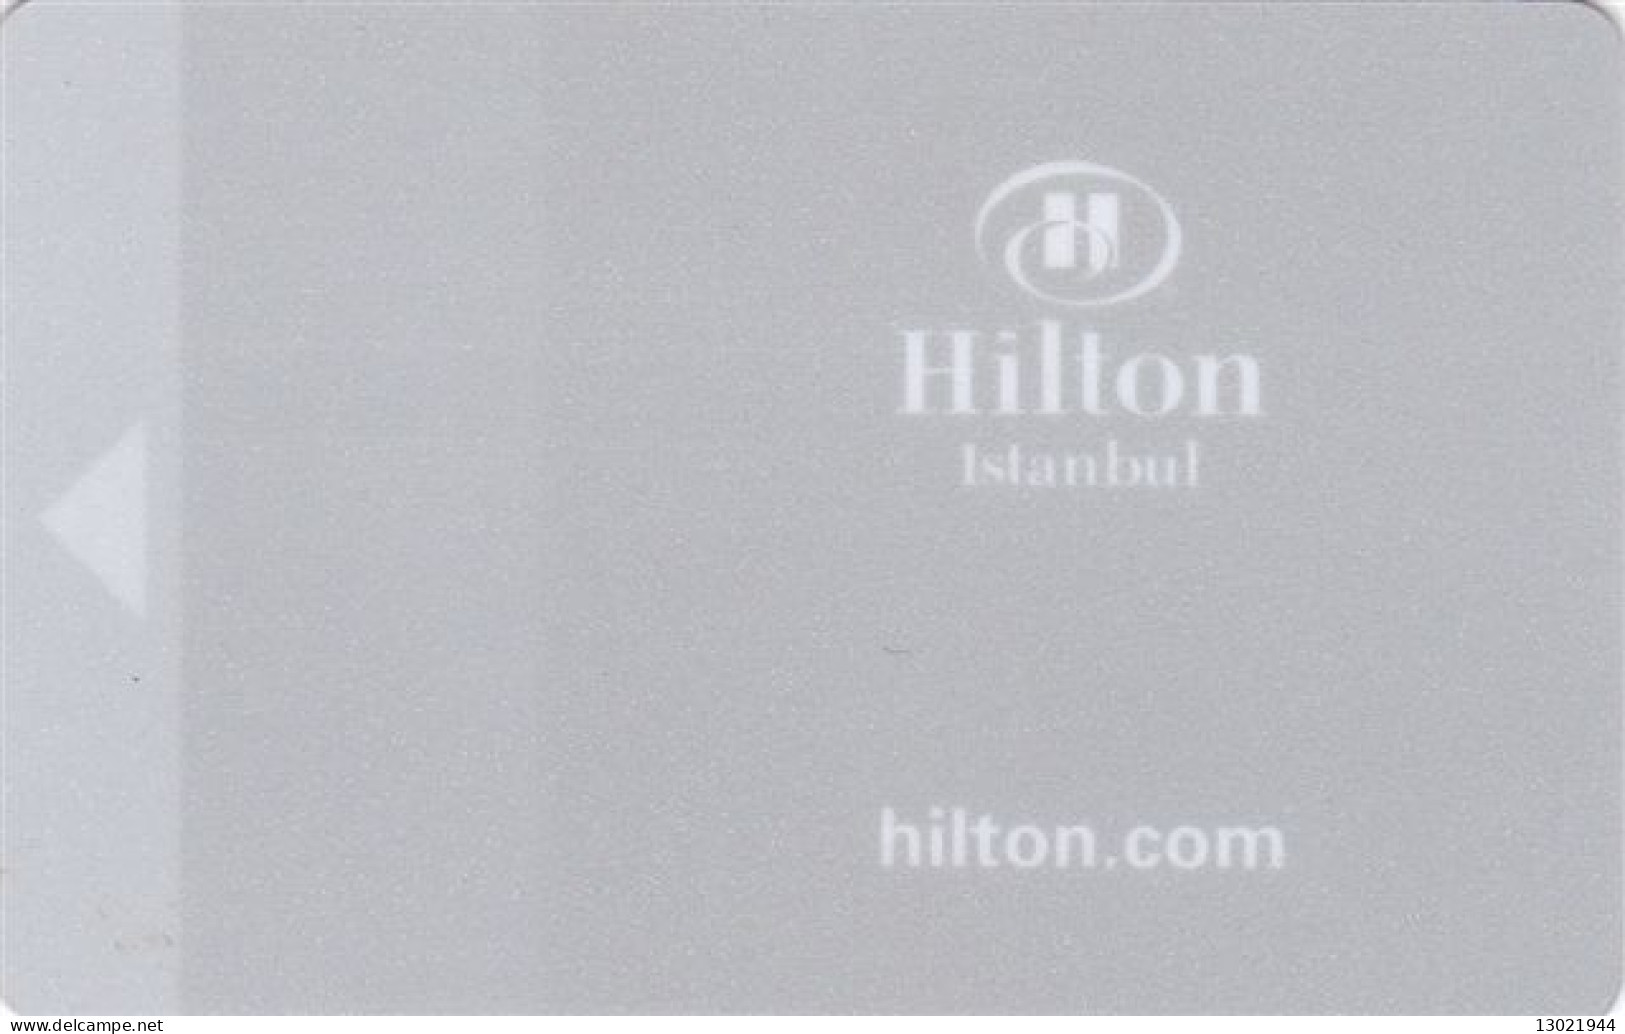 TURCHIA   KEY HOTEL  Hilton Istanbul 3 - Hotel Keycards